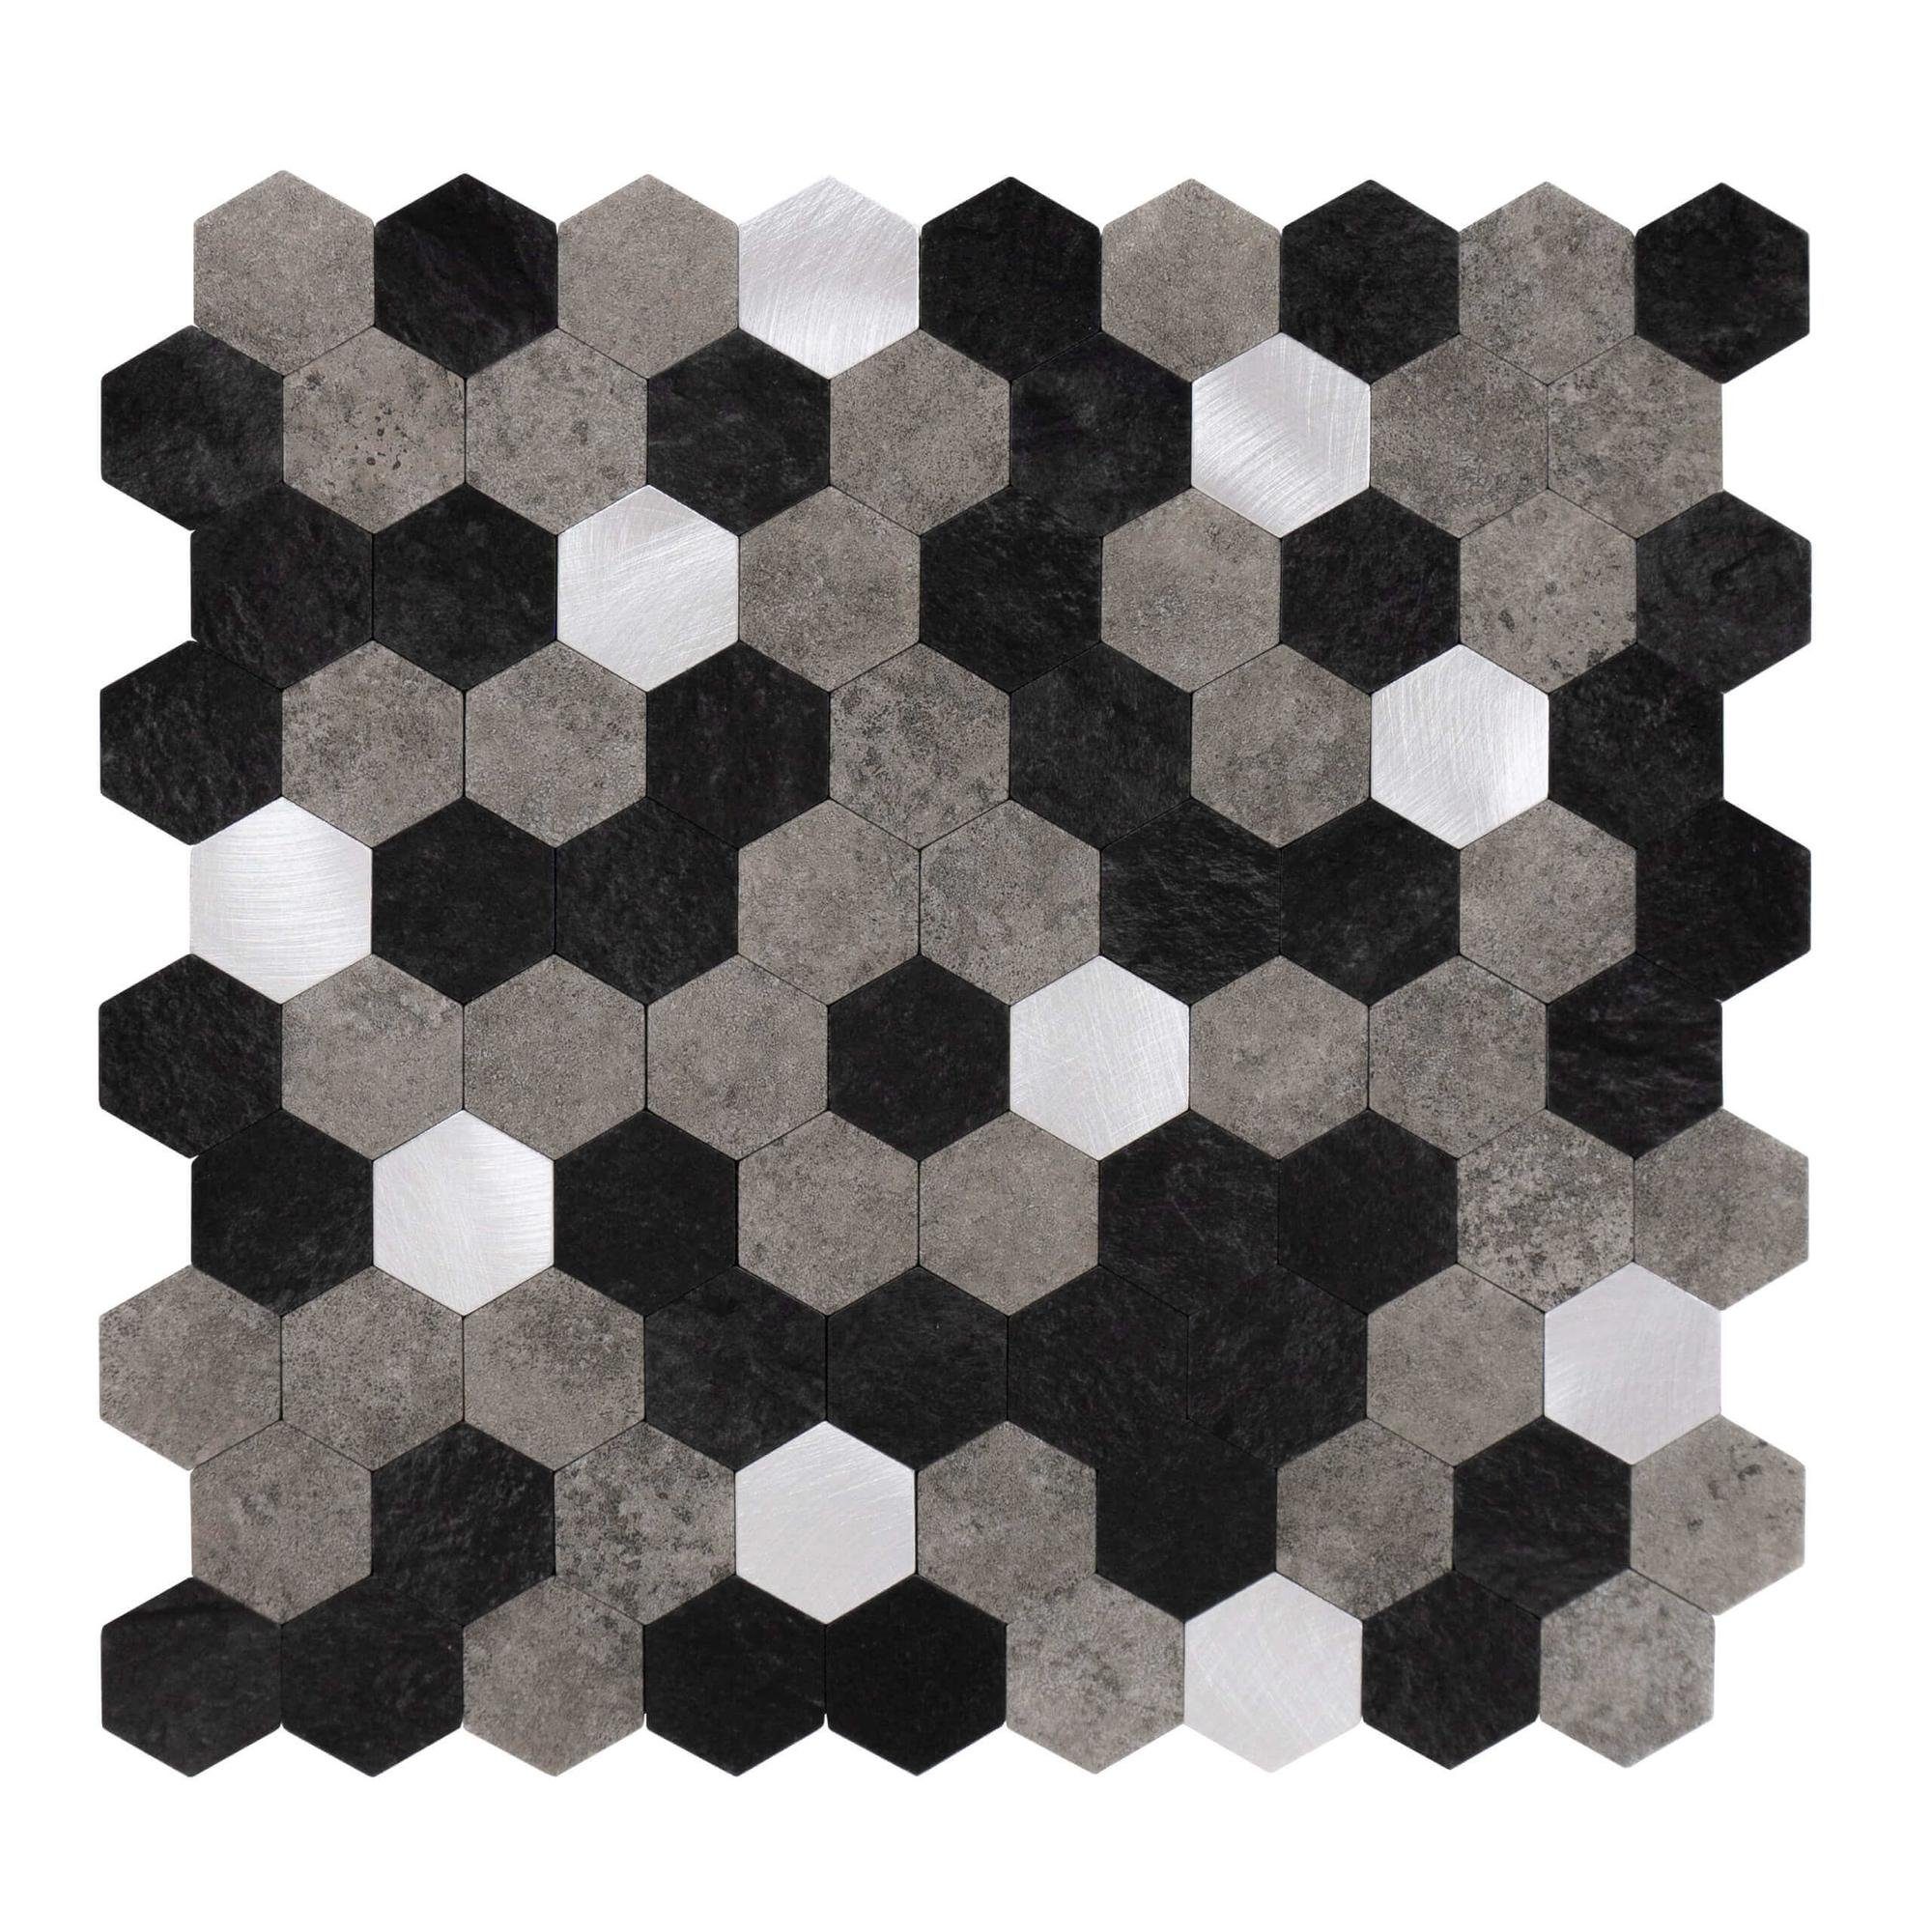 Dalsys Wandpaneel 0,88m² 11 Stück selbstklebend, (Schwarz Grau Silber Hexagon, 11-tlg., Wandfliese) feuchtigskeitsbeständig, einfach montiert, hochwertiges Material